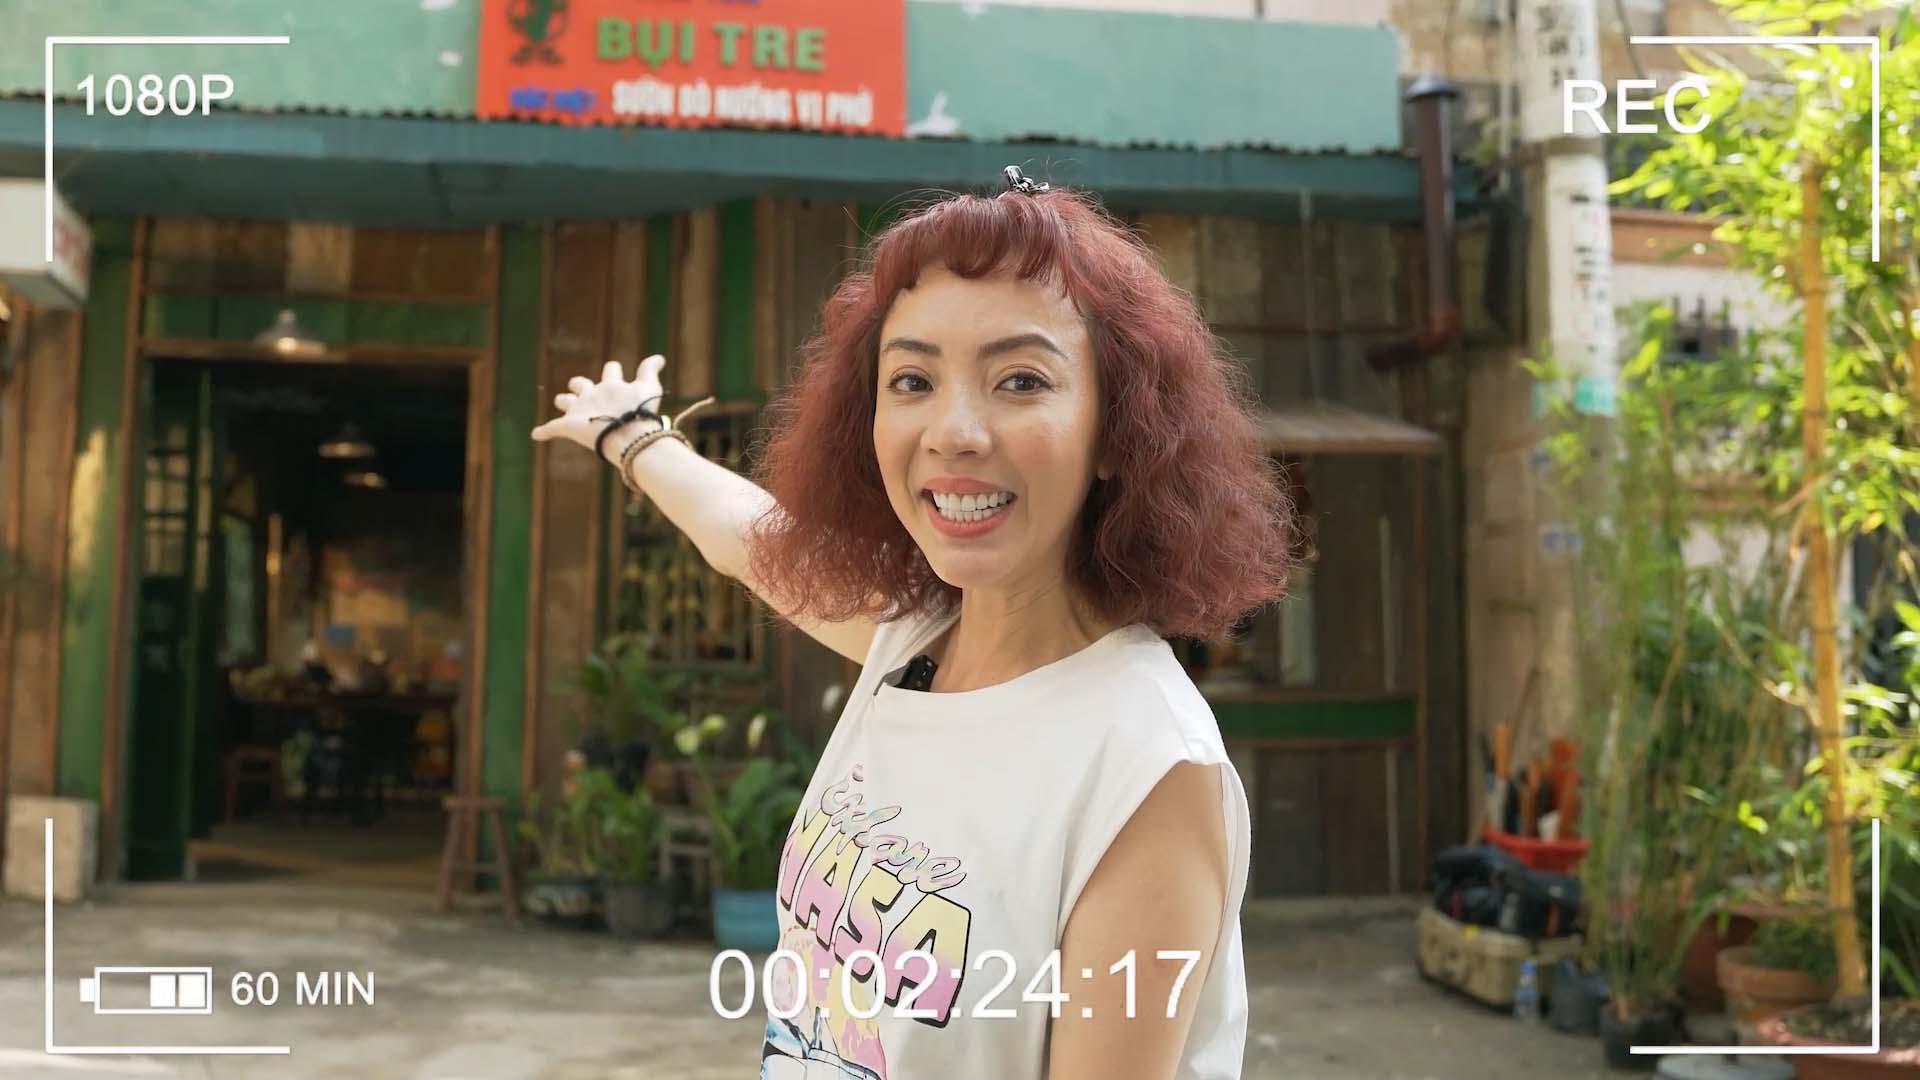 Thu Trang quay vlog bật mí chức danh hoành tráng của đội ngũ bán cơm trong Nghề Siêu Dễ - ảnh 2